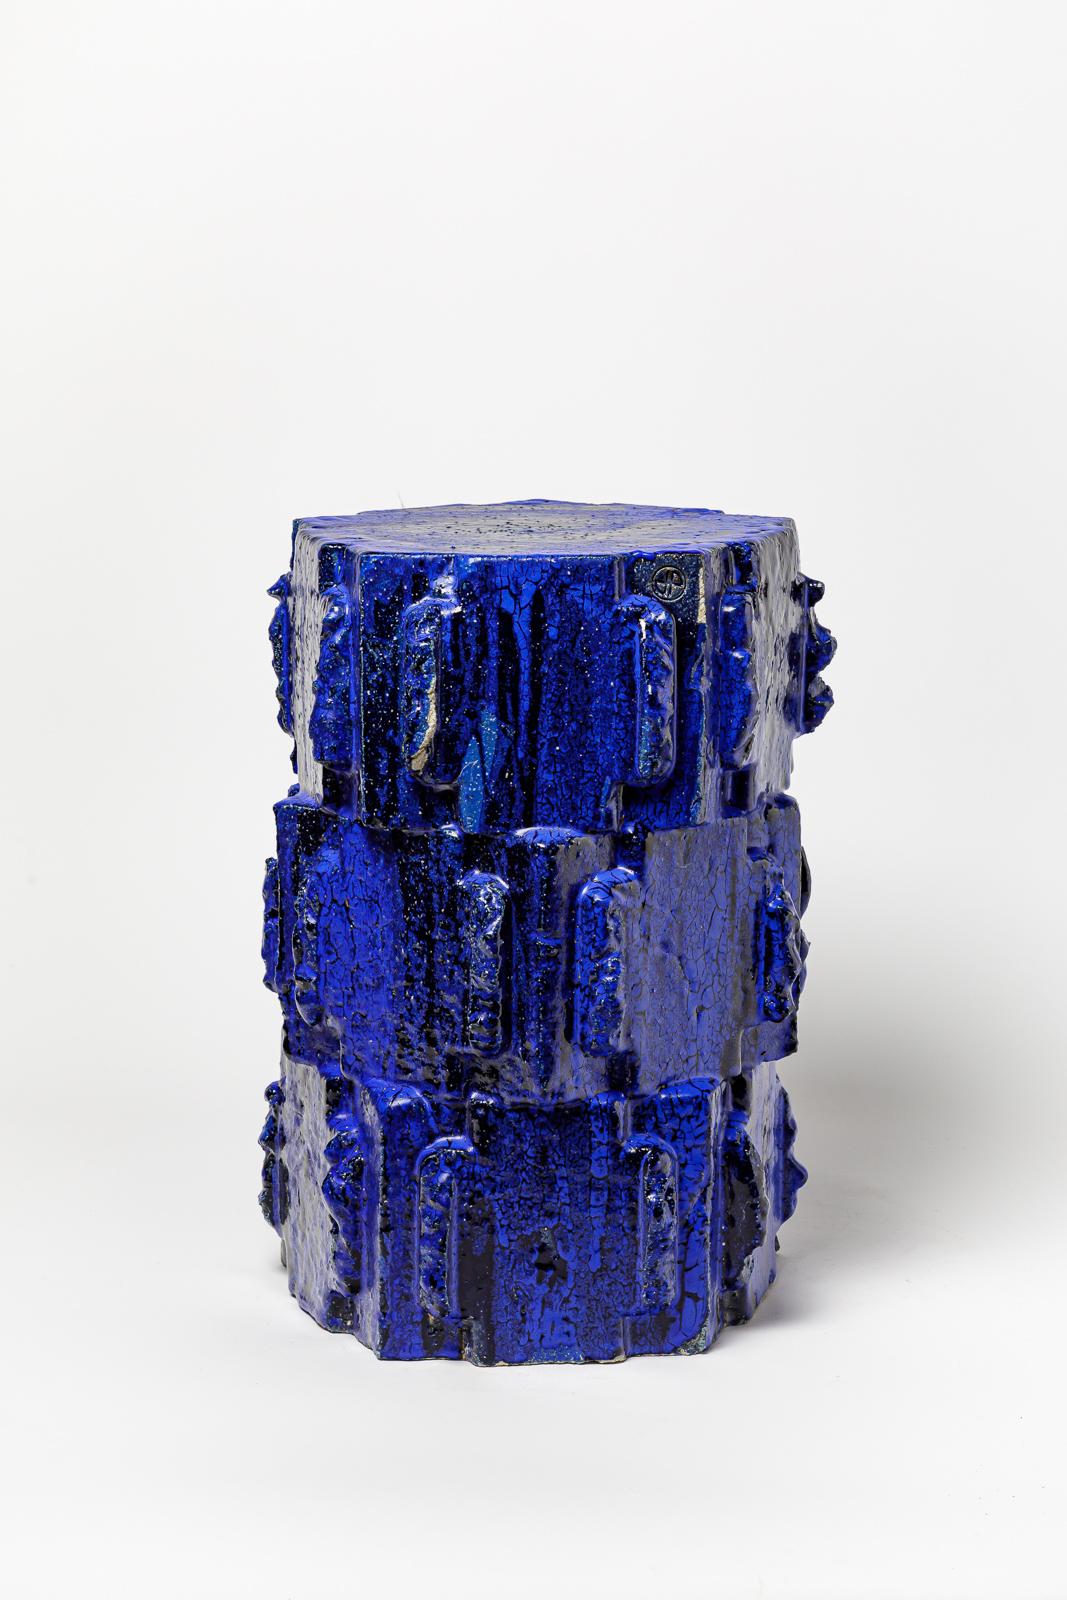 Paar blau glasierte Bollène-Hocker aus Steinzeug von Jean Ponsart.
Künstlermonogramm am Sockel. 2023.
H : 20,8' x 12,6' x 10,8 Zoll.